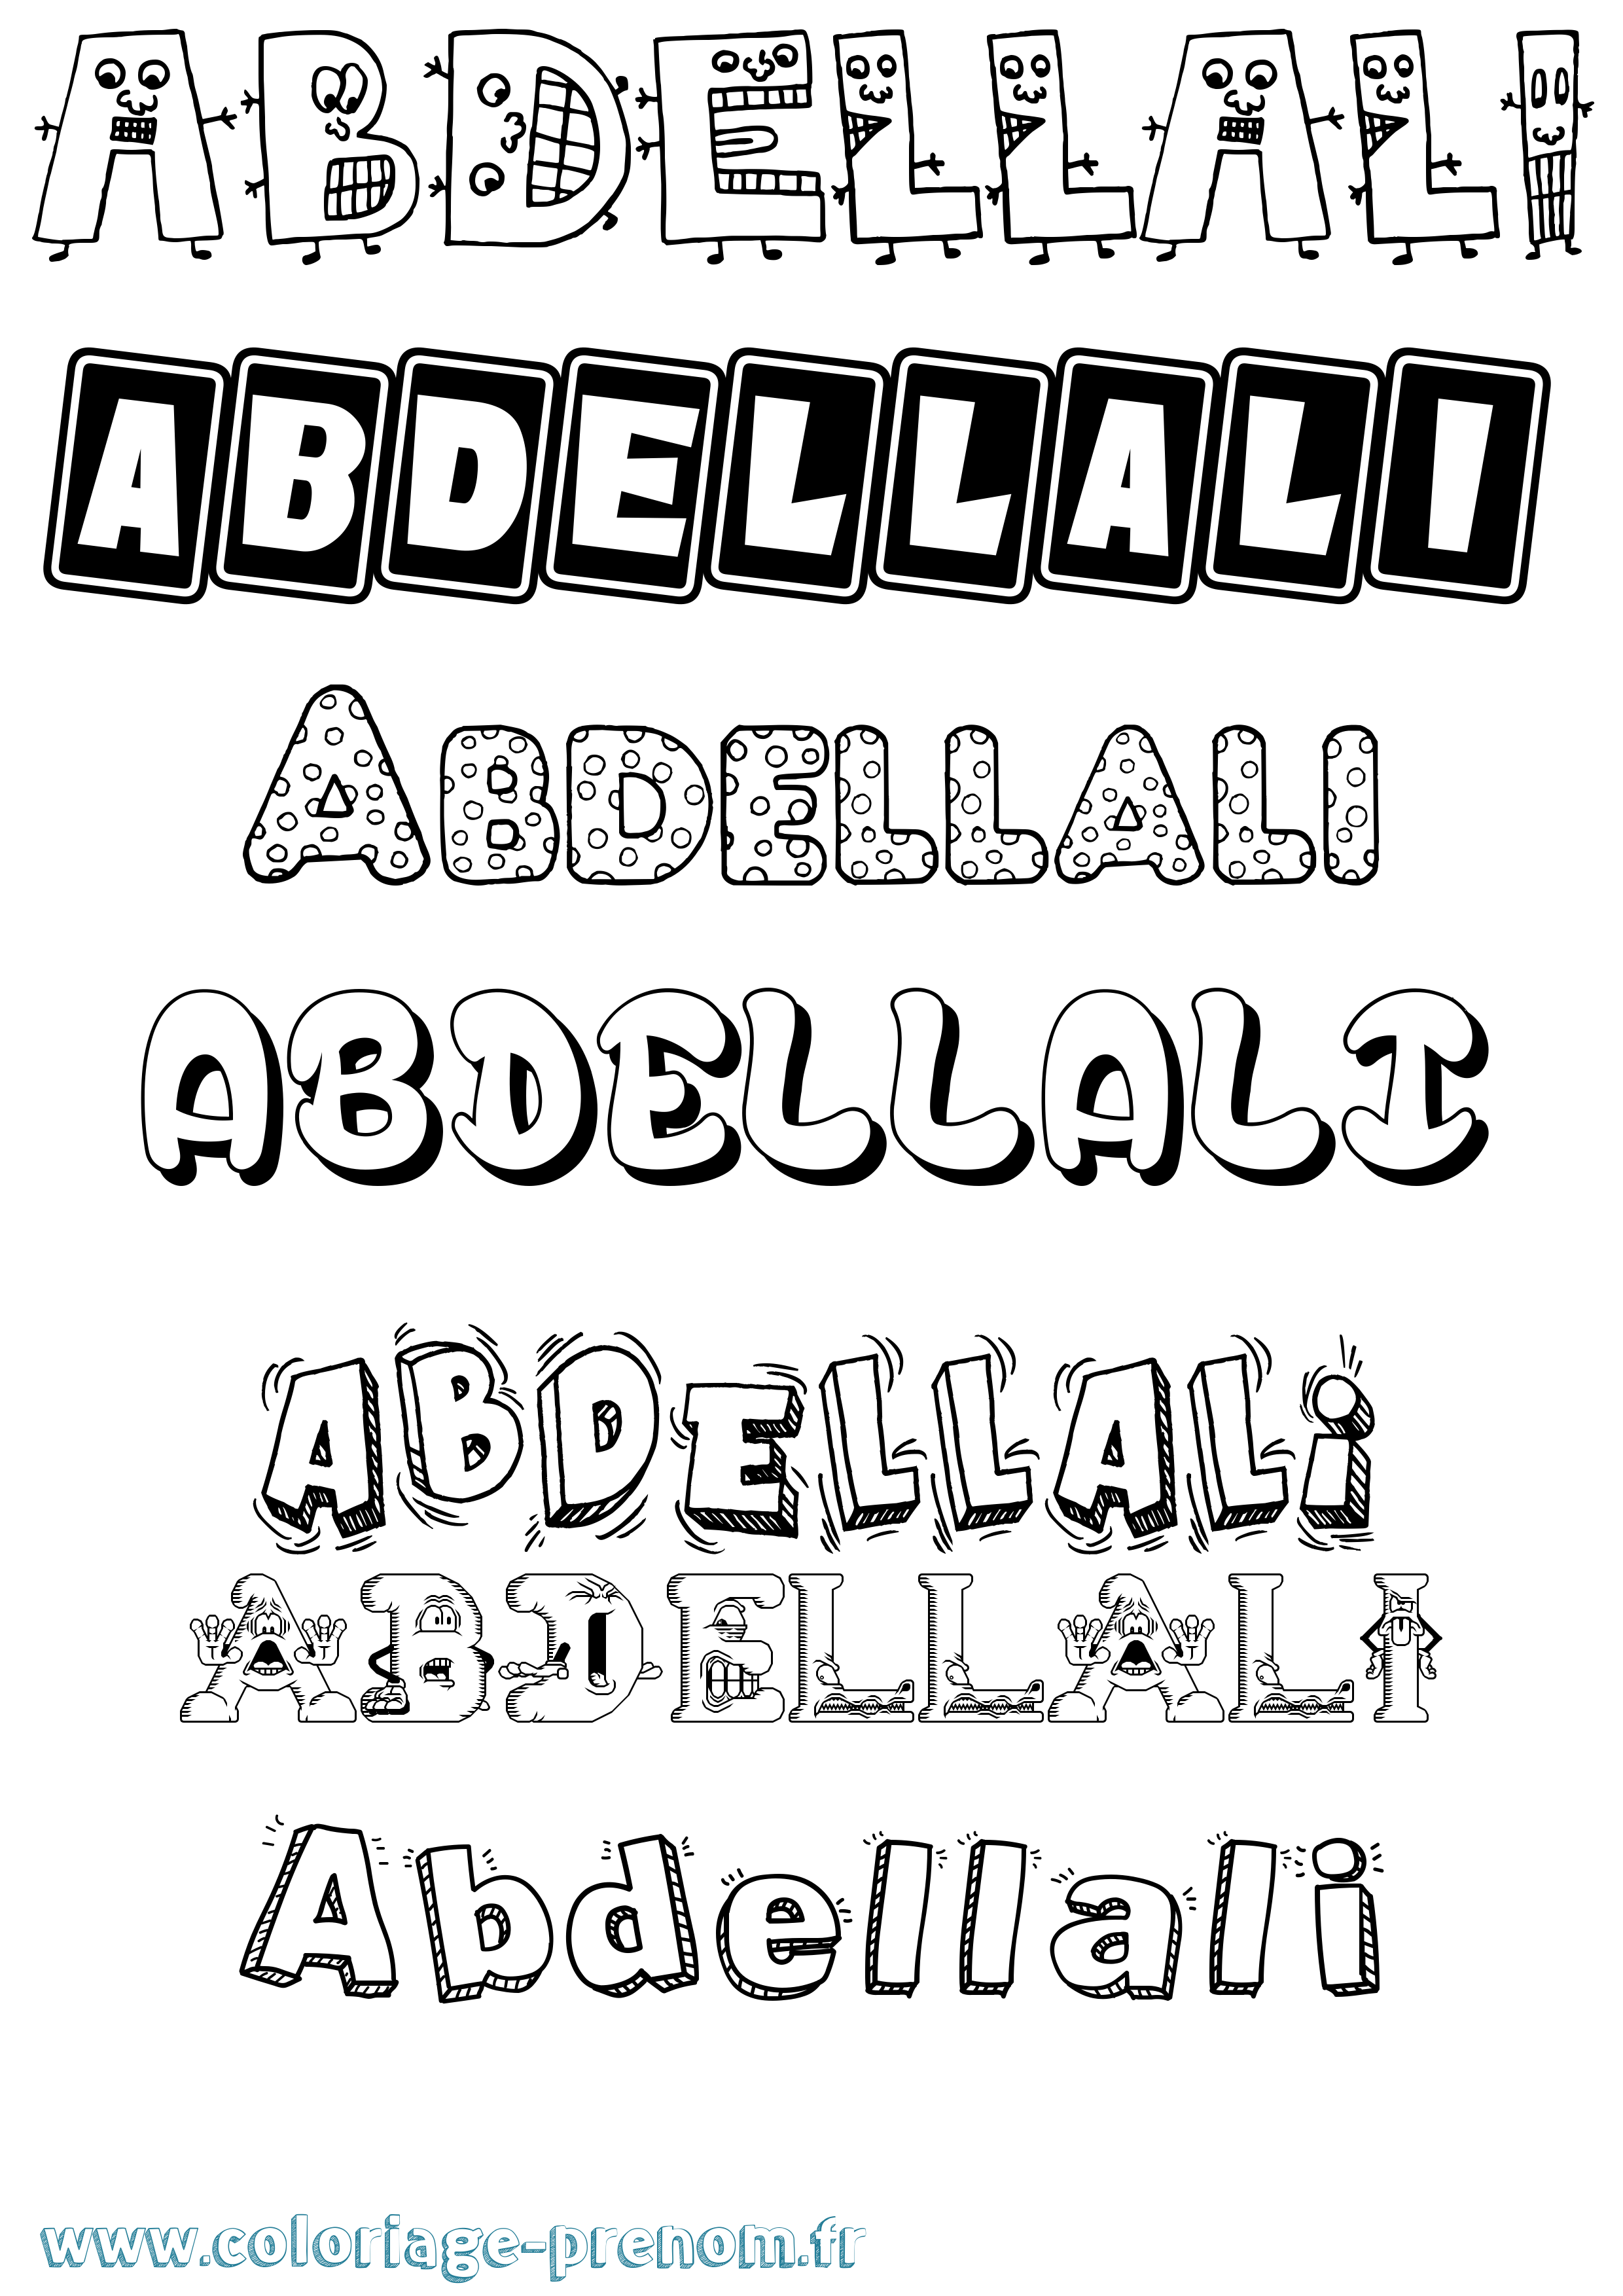 Coloriage prénom Abdellali Fun